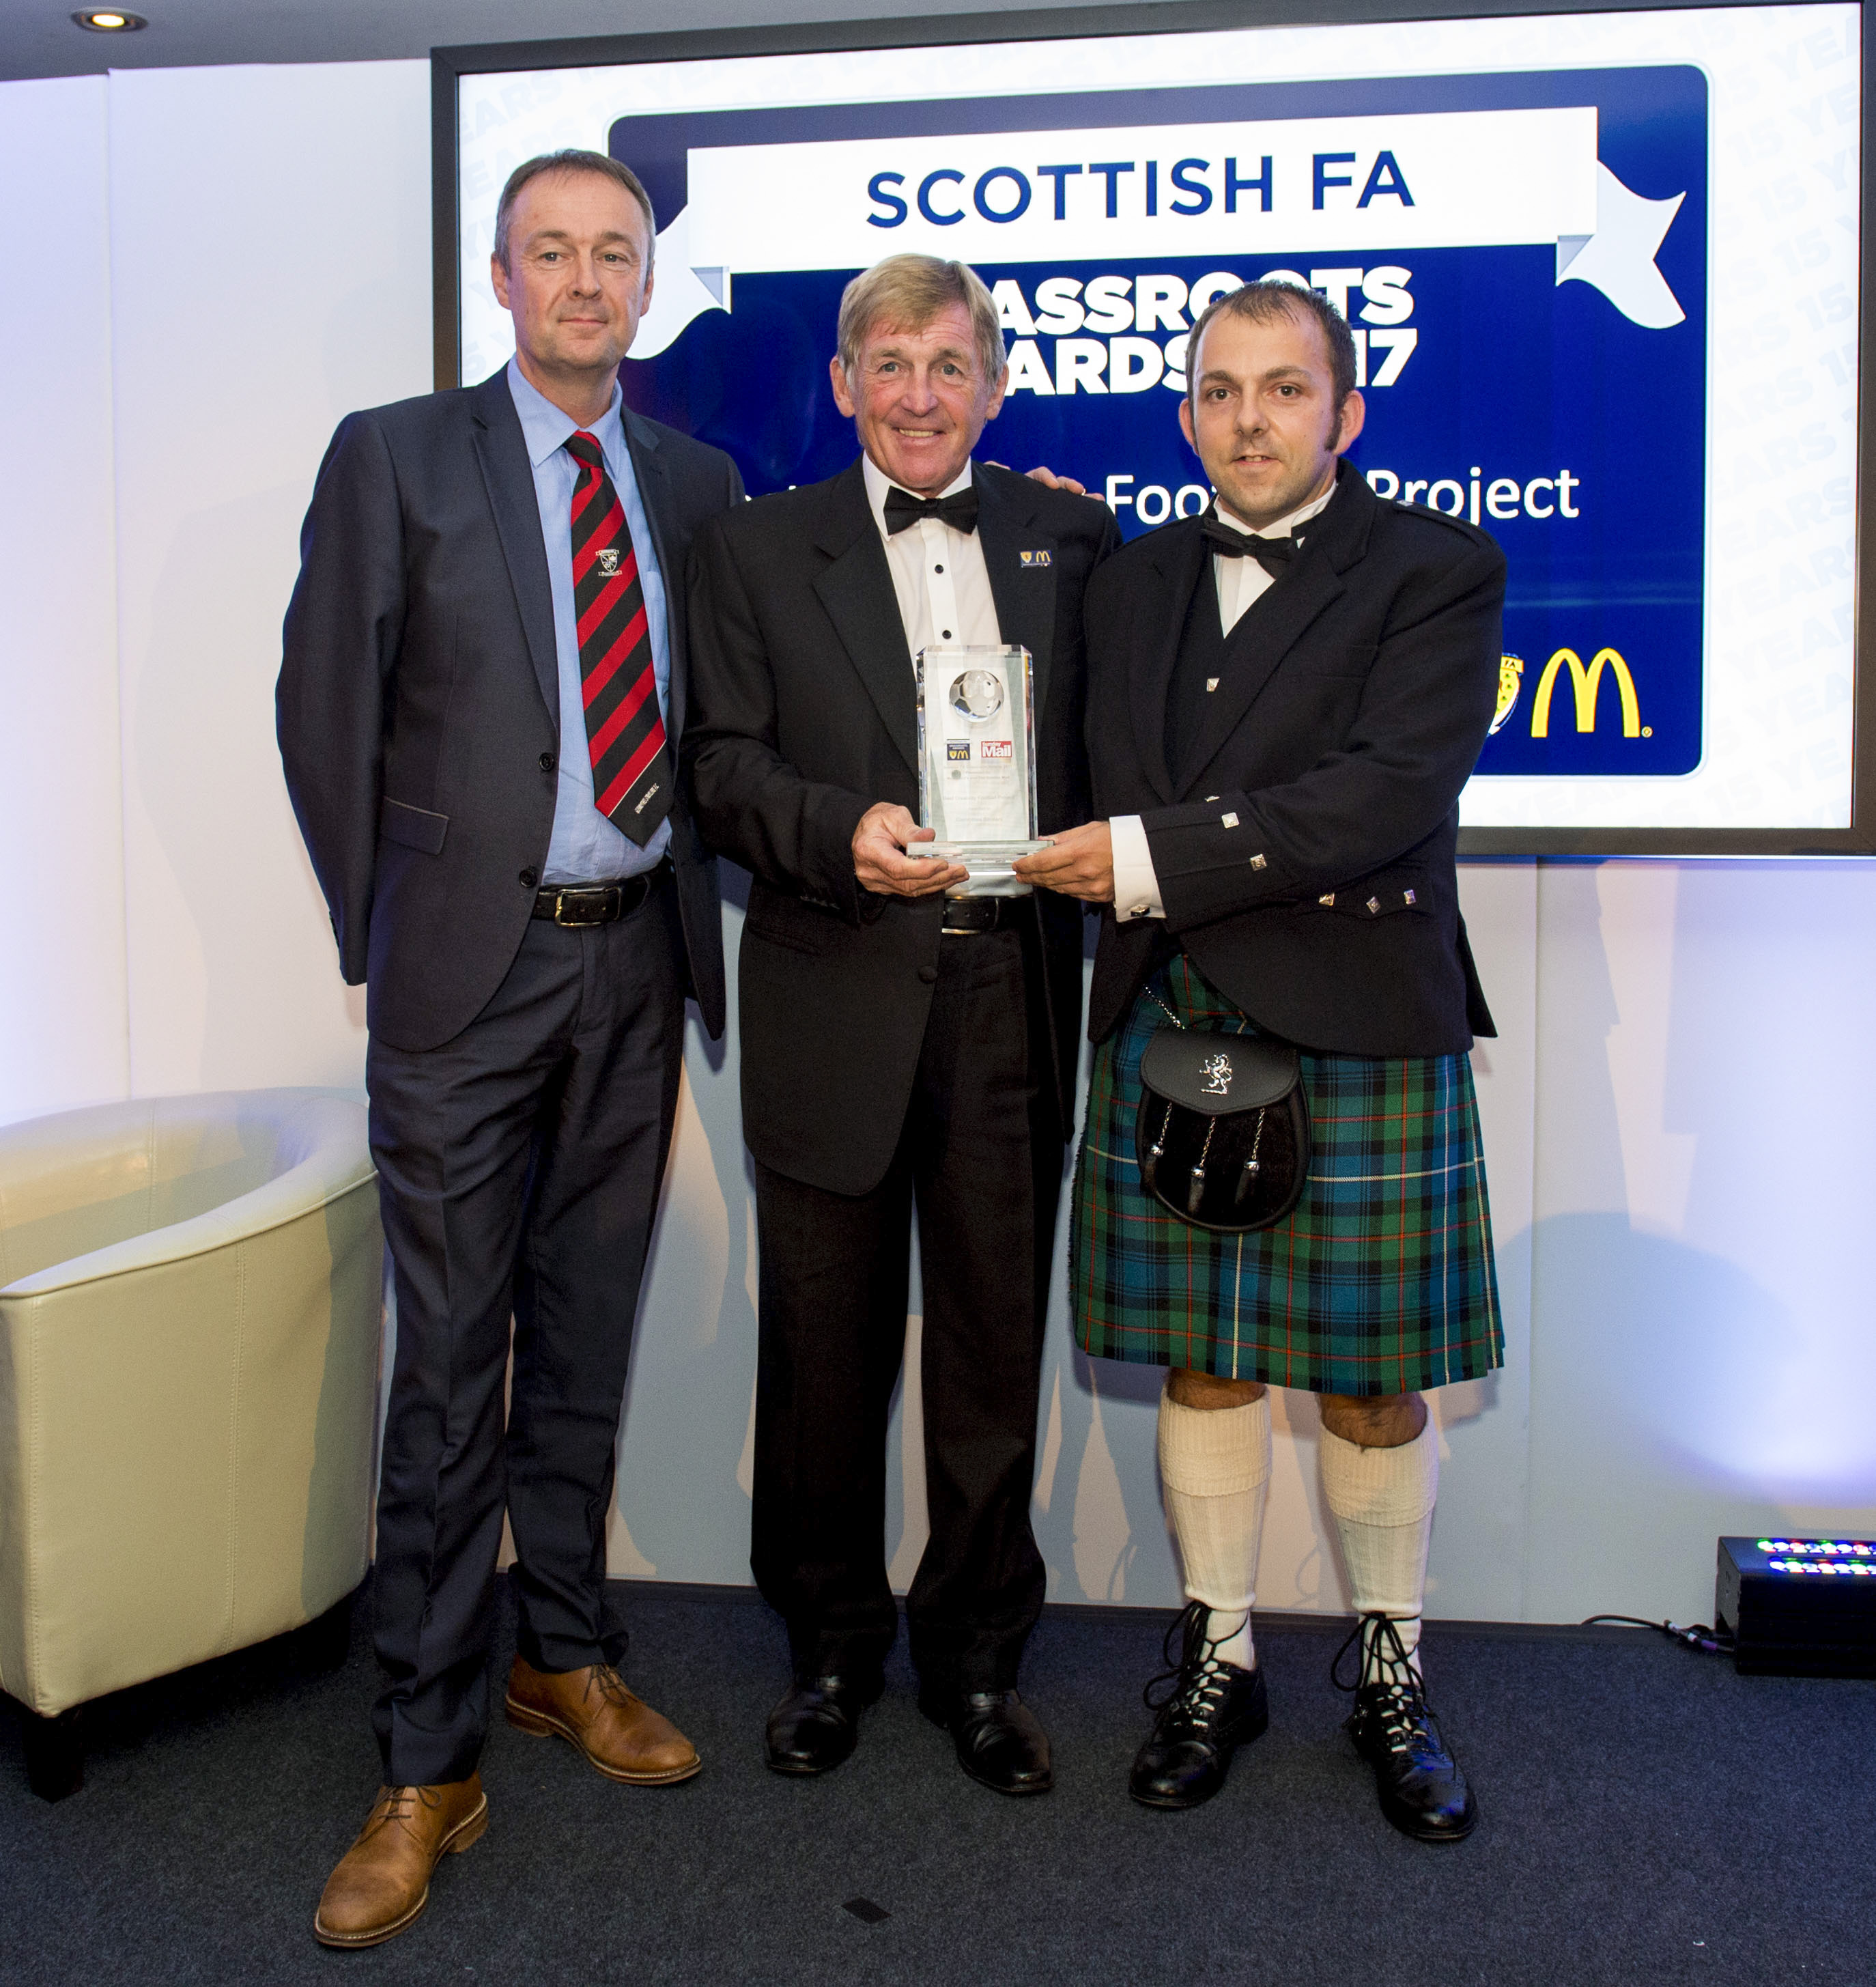 Brian & Andrew recieving award from Kenny Dalglish